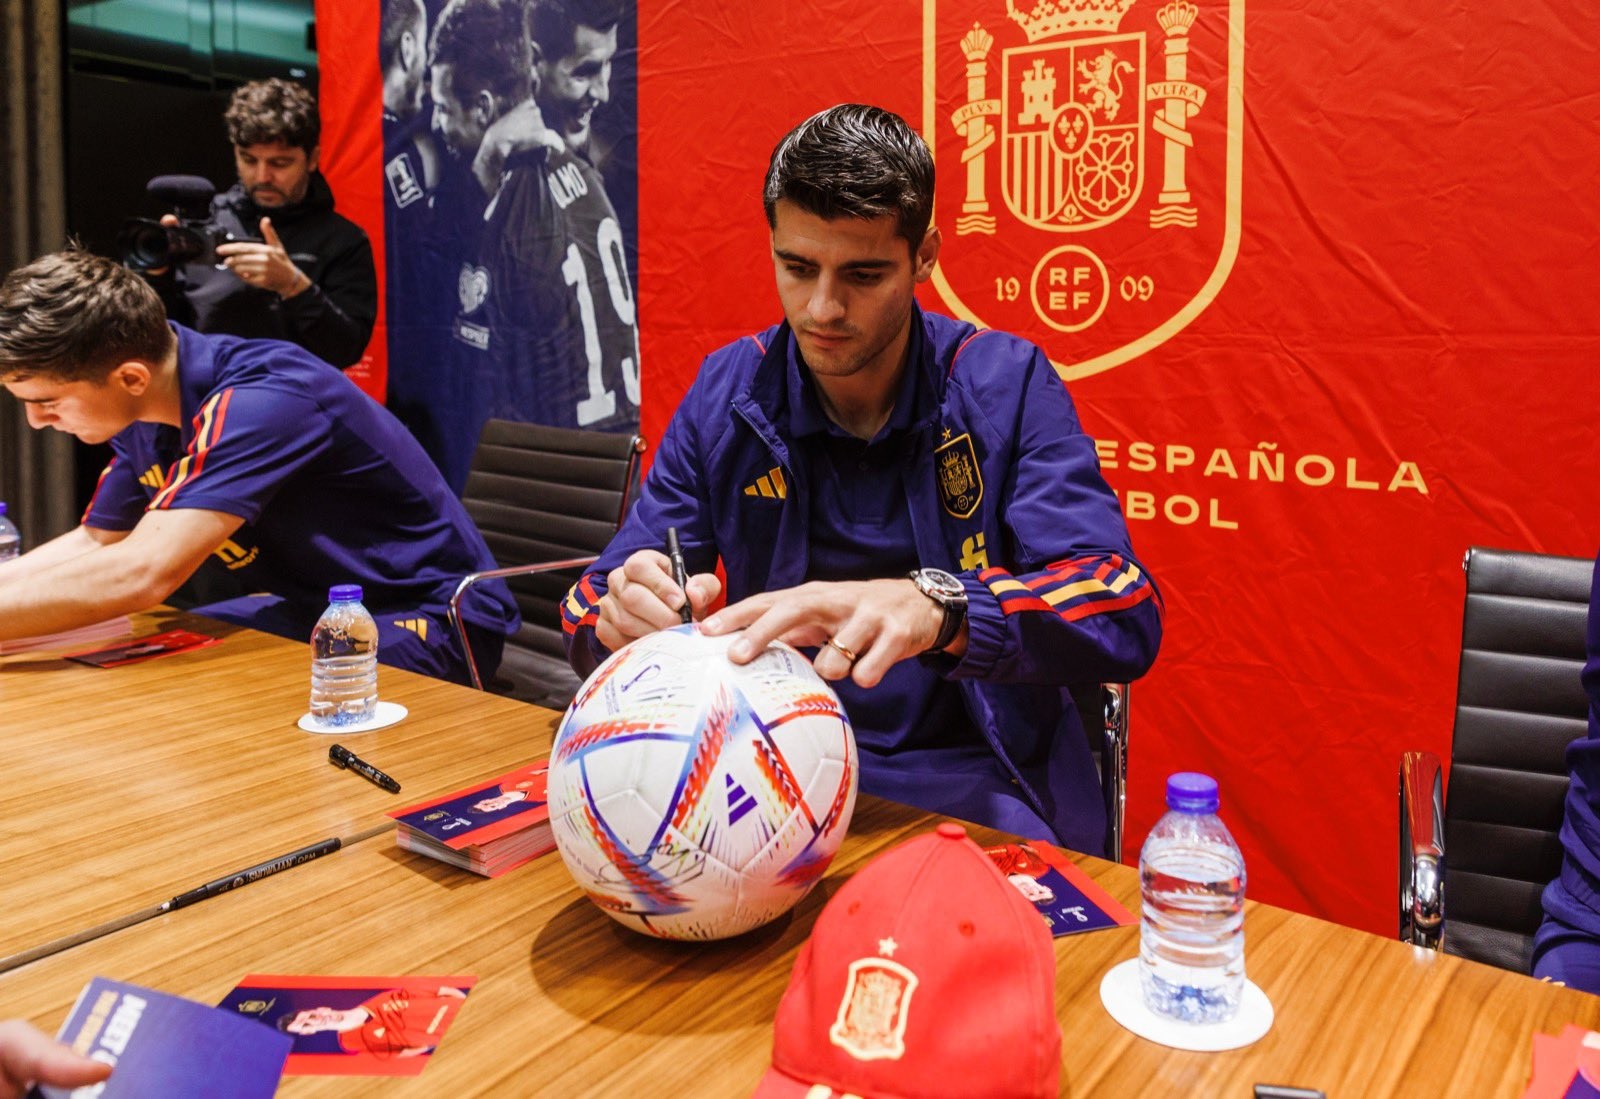 Álvaro Morata é o artilheiro da Espanha com 27 gols — Foto: Divulgação/Espanha